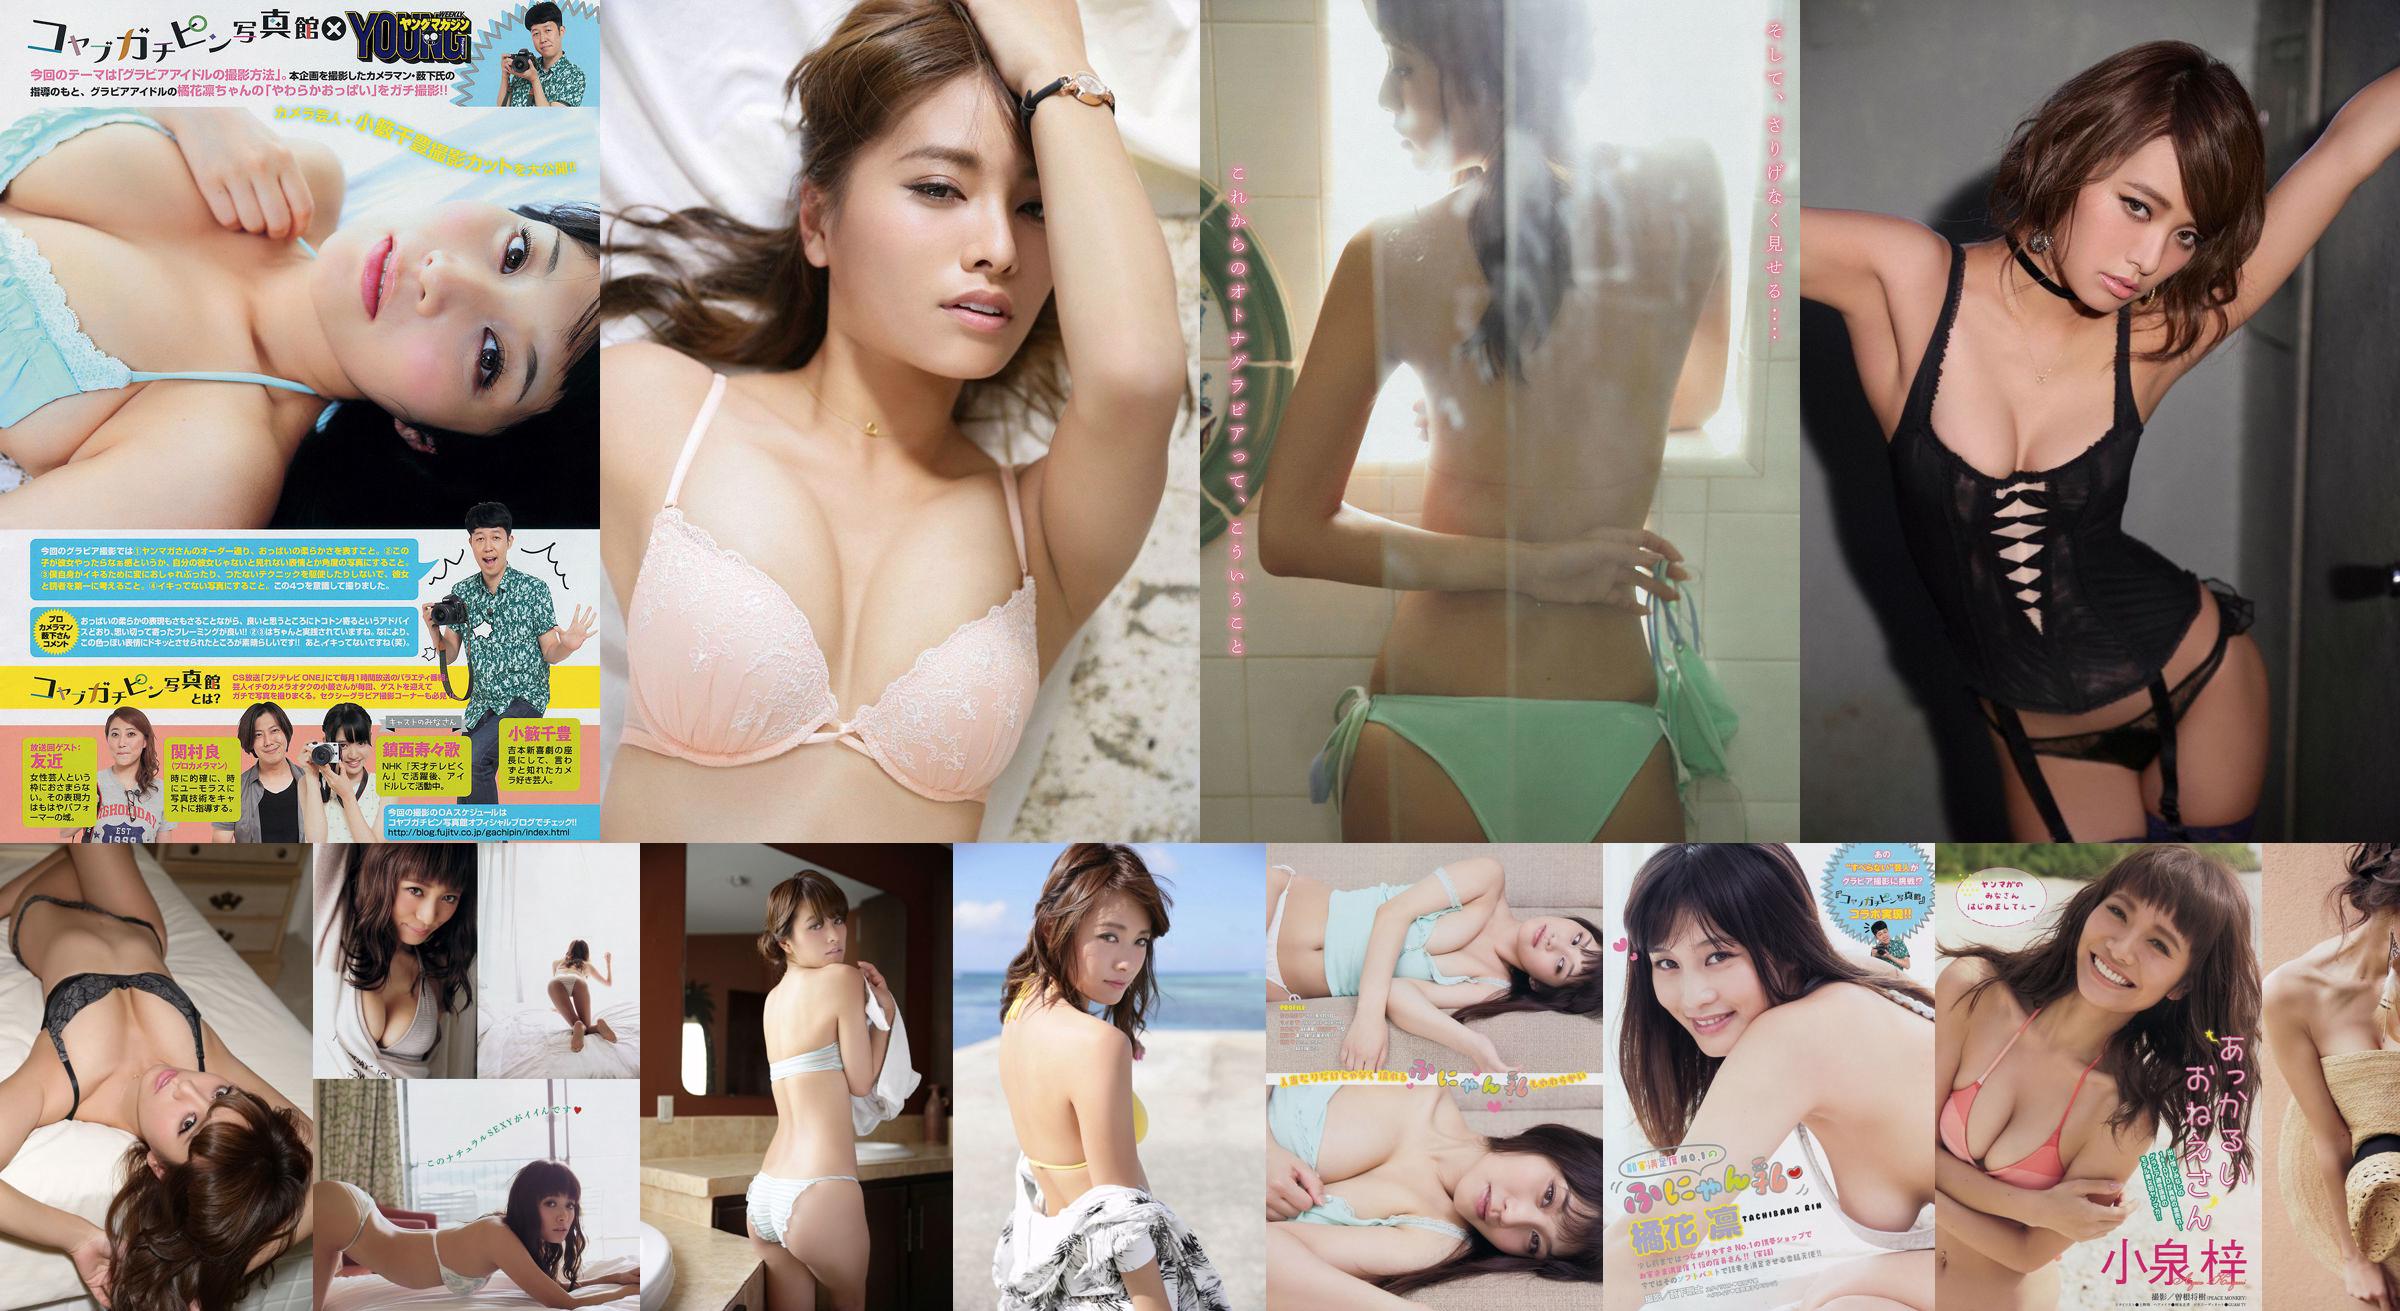 [Young Magazine] Azusa Koizumi Tachibana Rin 2014 No.43 Photo Magazine No.a39024 Pagina 1